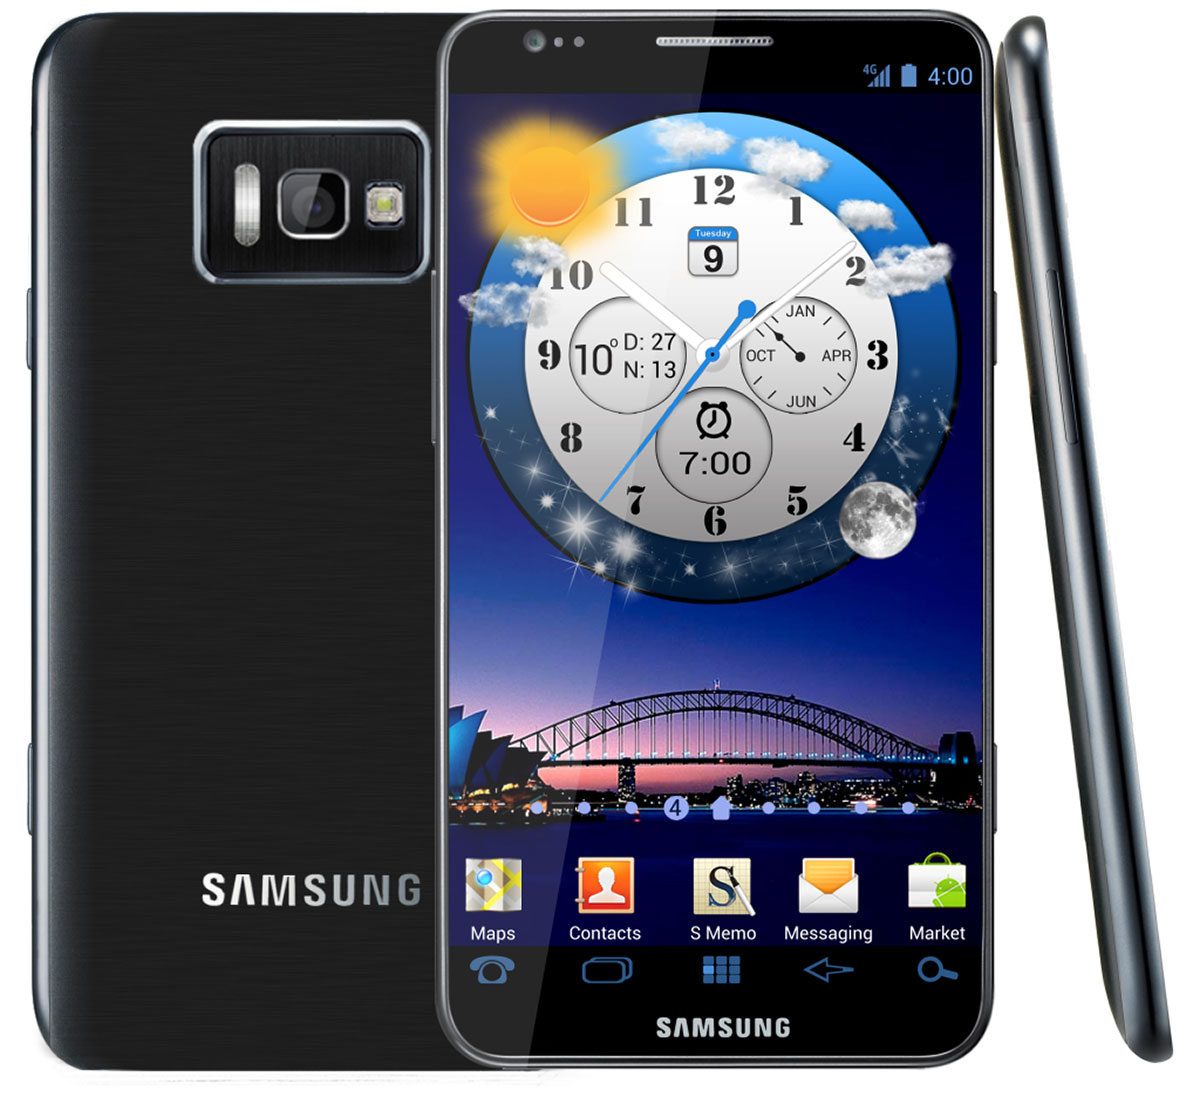 Samsung Galaxy S II I9500